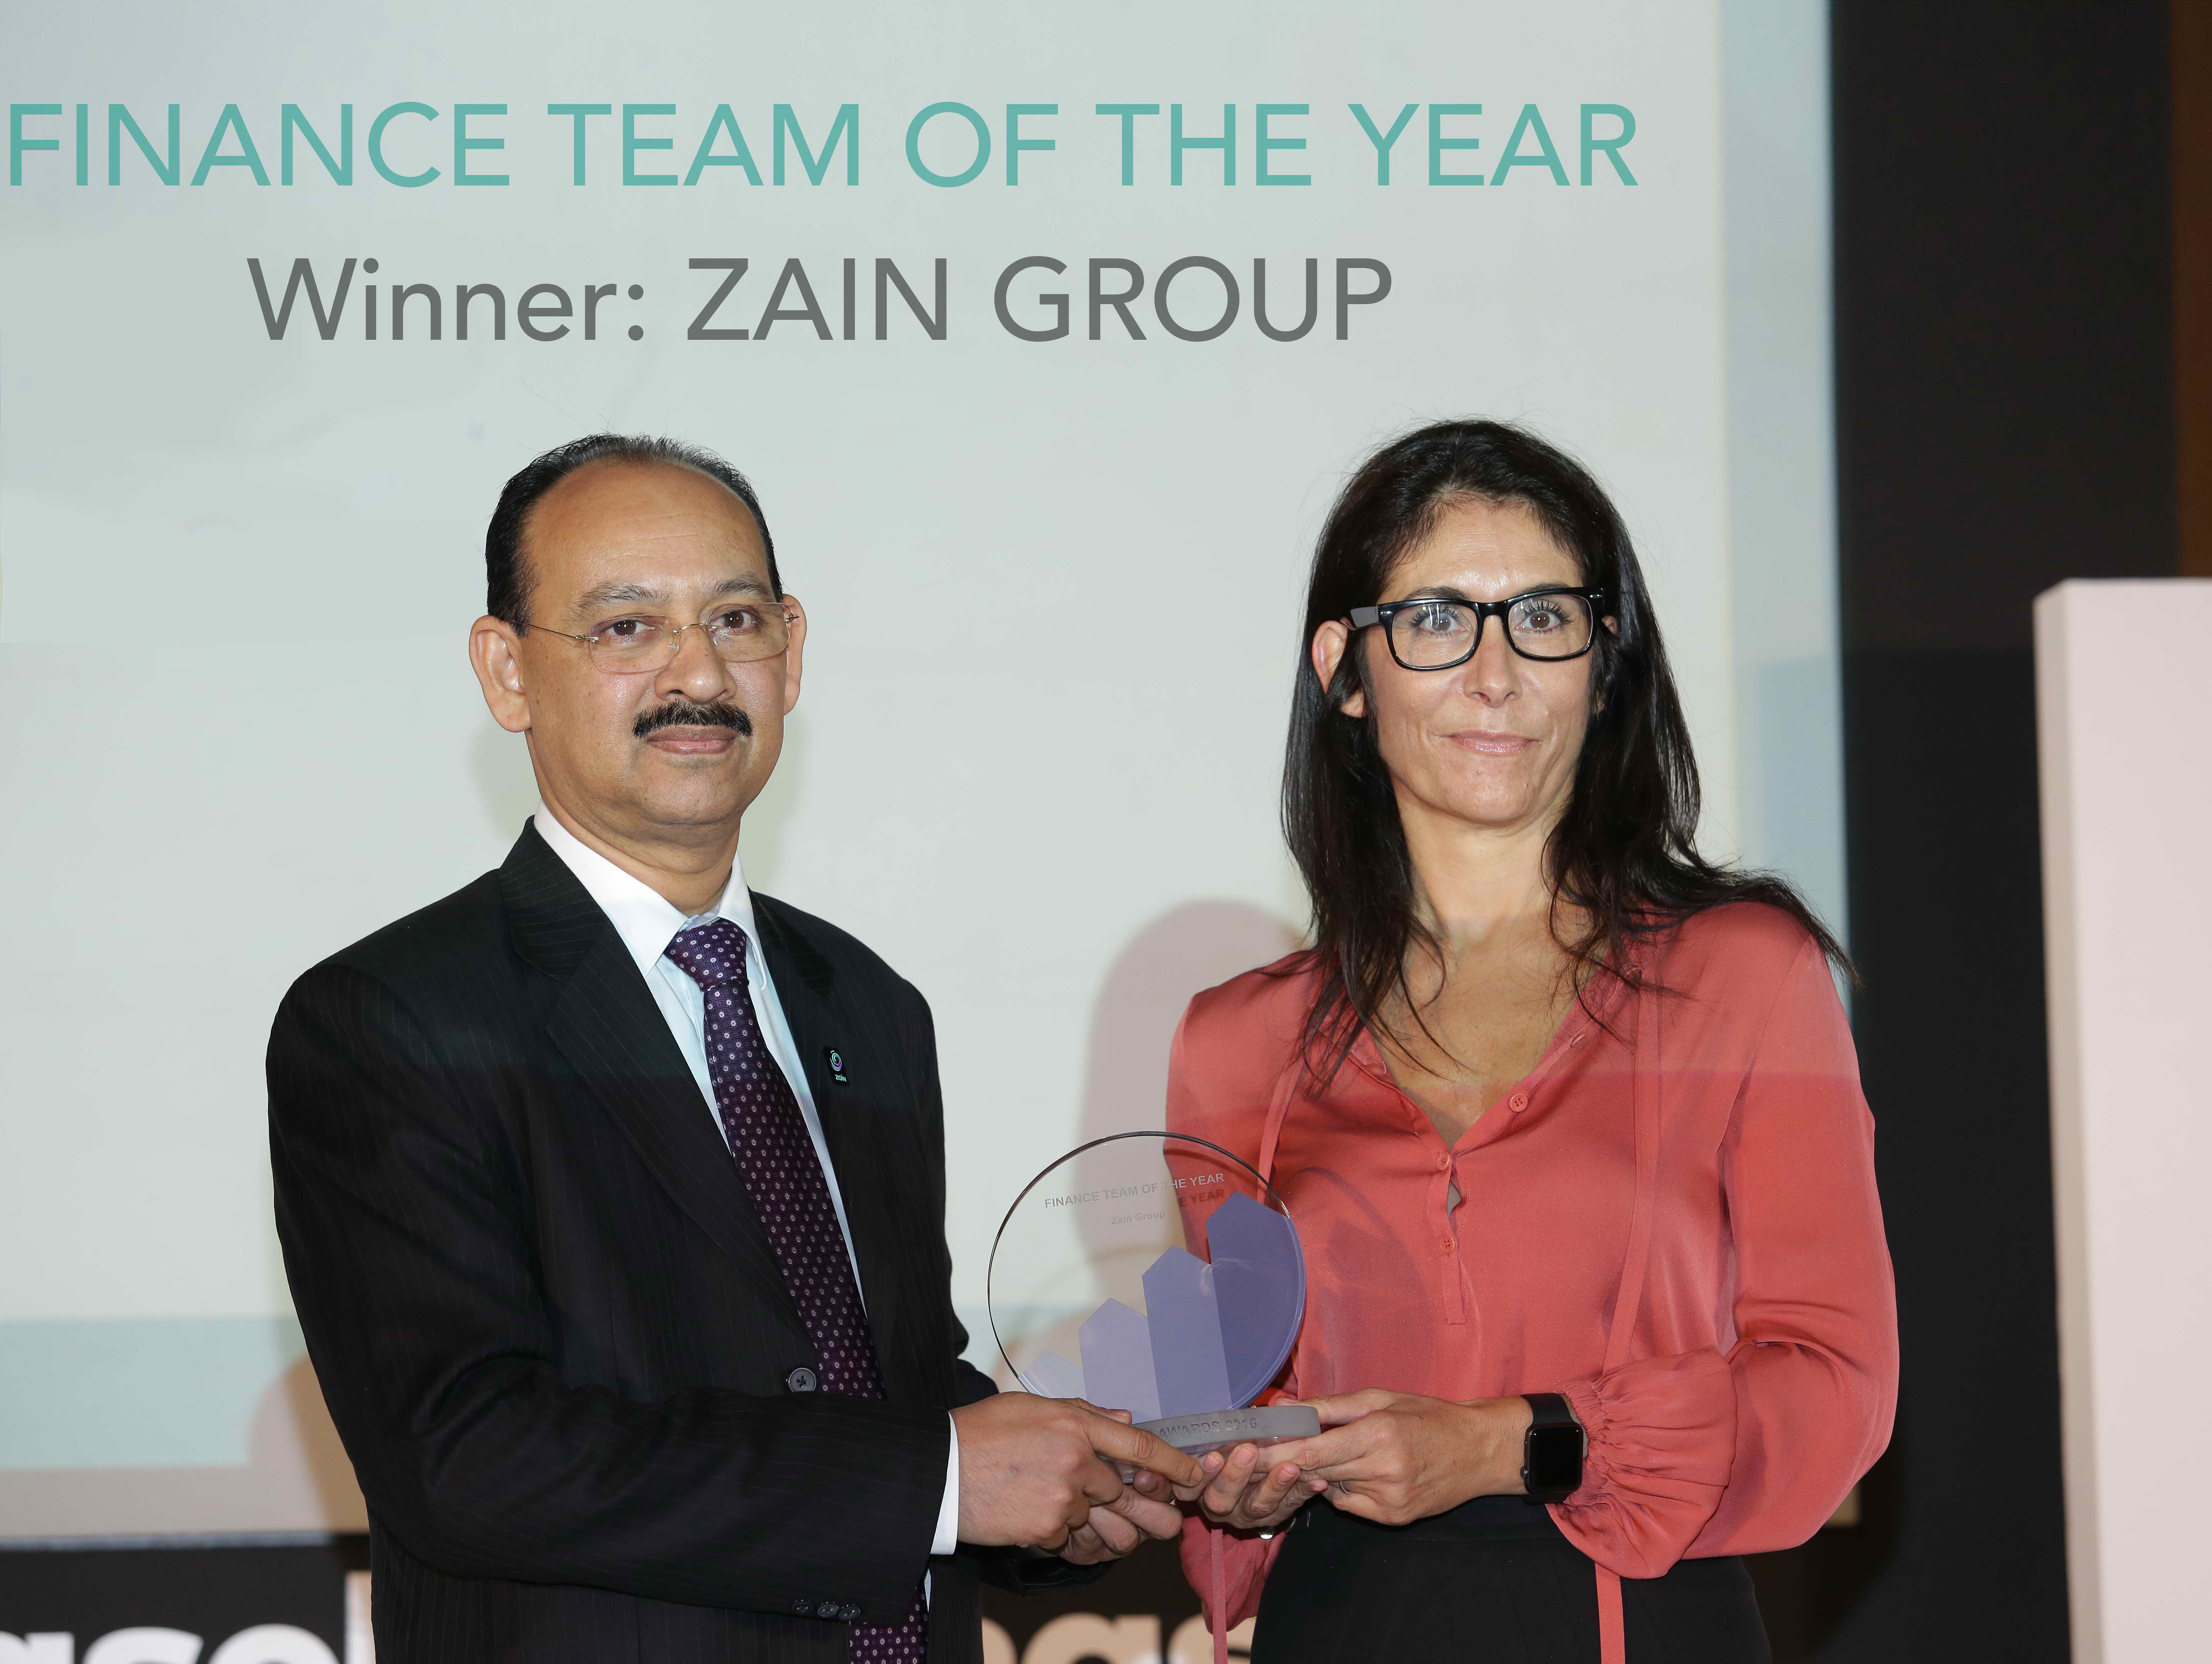 Zain Finance Team award pic.jpg